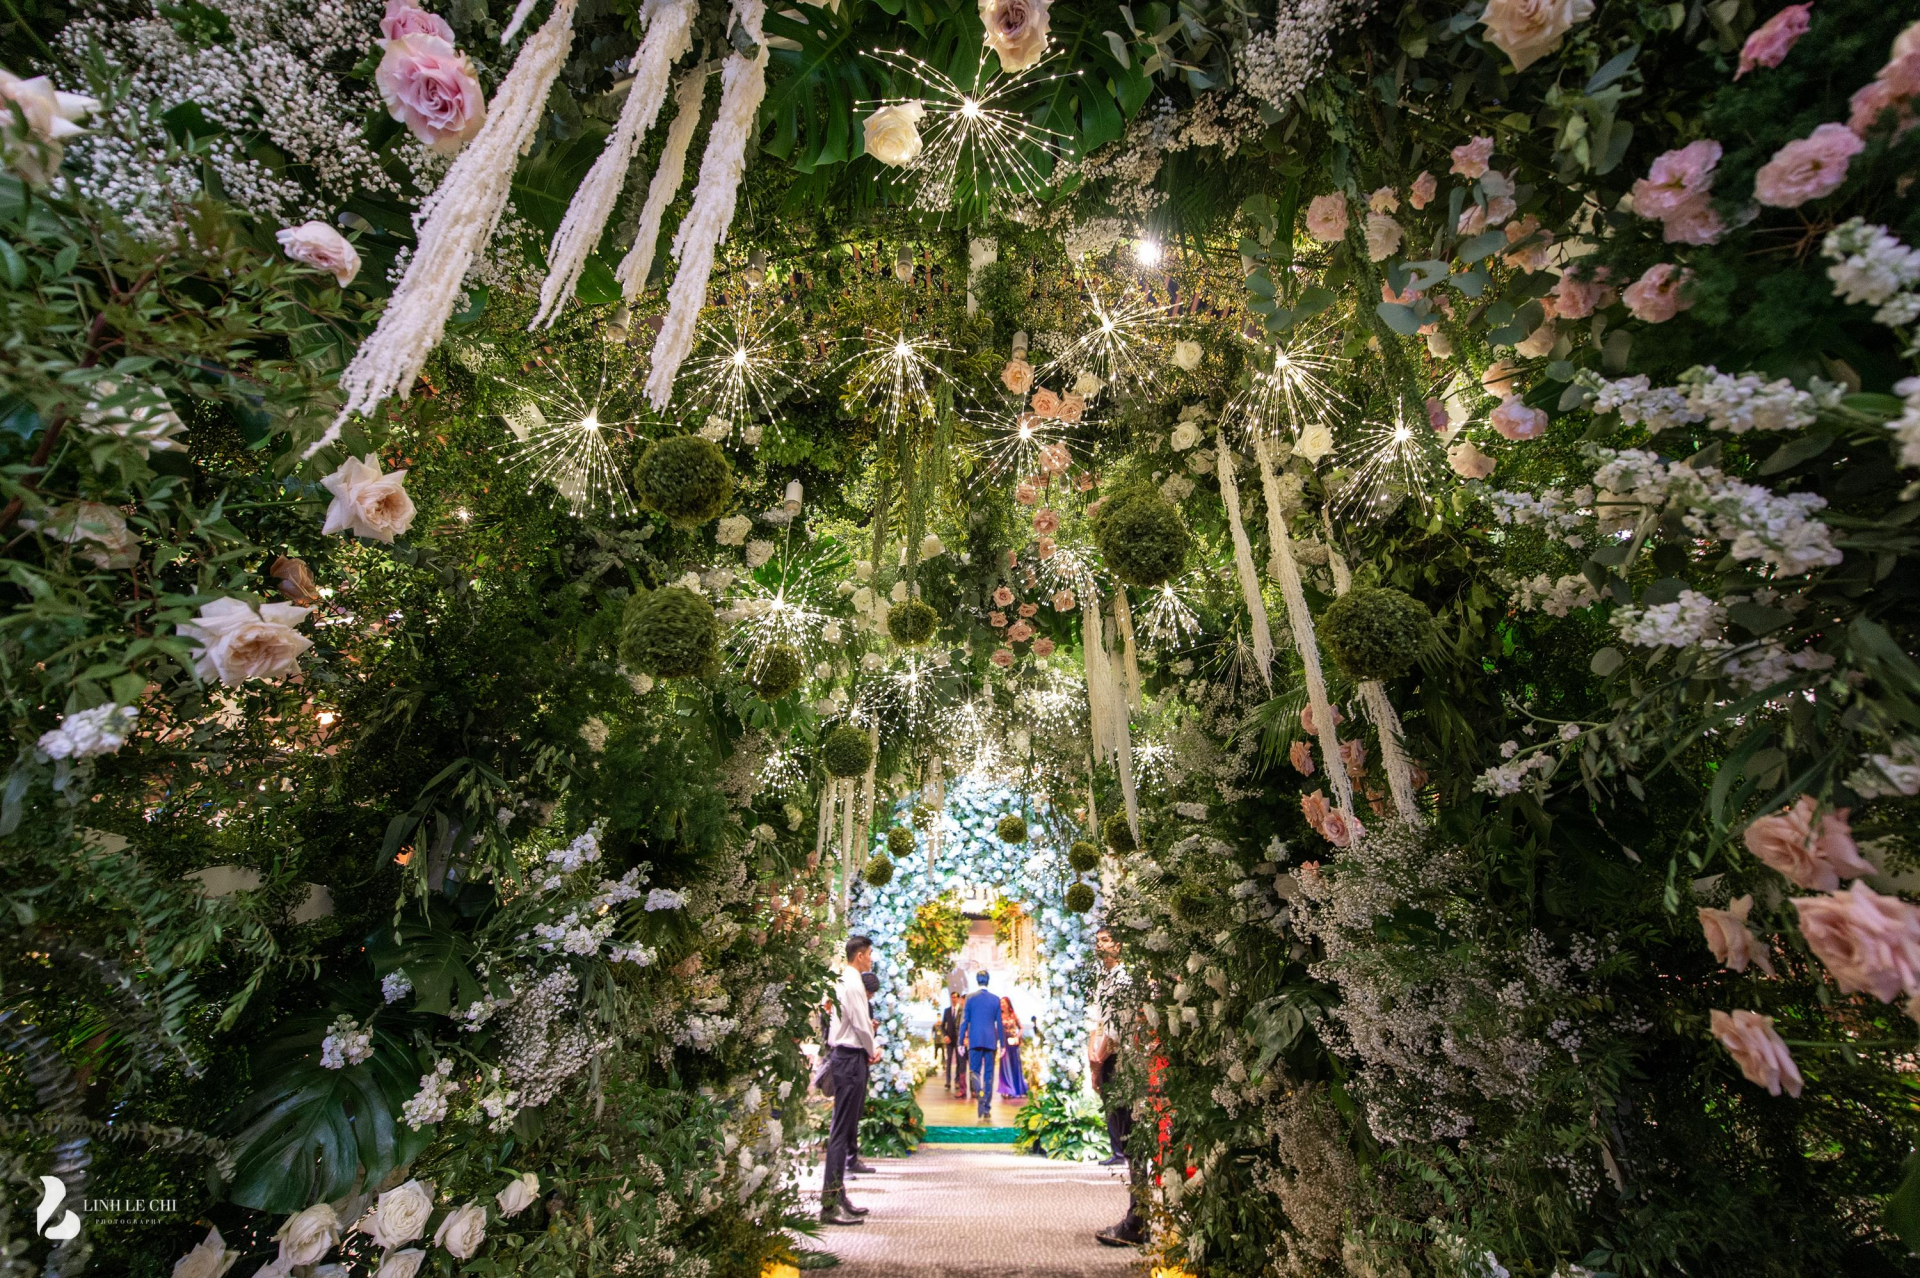 Không gian lễ cưới của Hoa hậu Đỗ Mỹ Linh được thiết kế đặc biệt với hình ảnh cầu vọng cảnh hoành tráng mang ý nghĩa tình yêu trường tồn vĩnh cửu, đây cũng là phông nền chính chụp ảnh đón khách của cặp đôi.